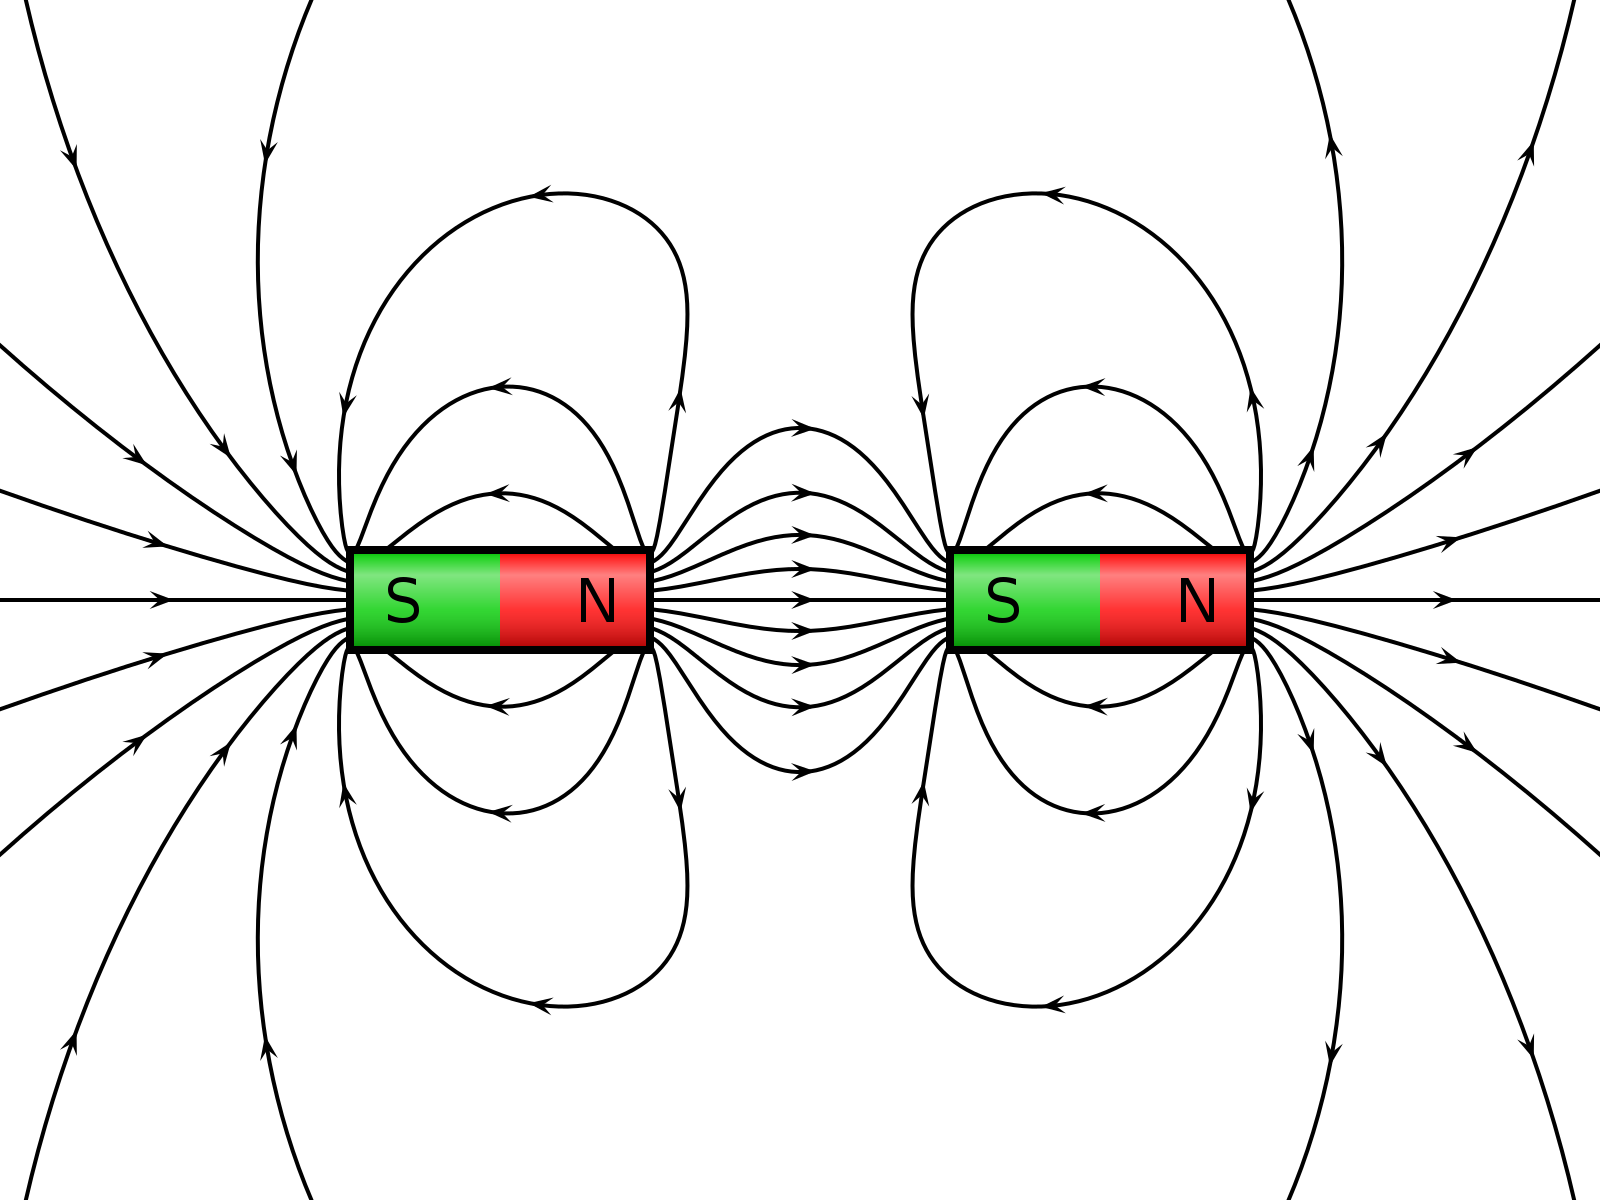 Притяжение магнитных полюсов. Магнитное поле двух полосовых магнитов. Силовые линии магнитного поля двух магнитов. Силовые линии магнитного поля магнита. Схема магнитного поля полосового магнита.